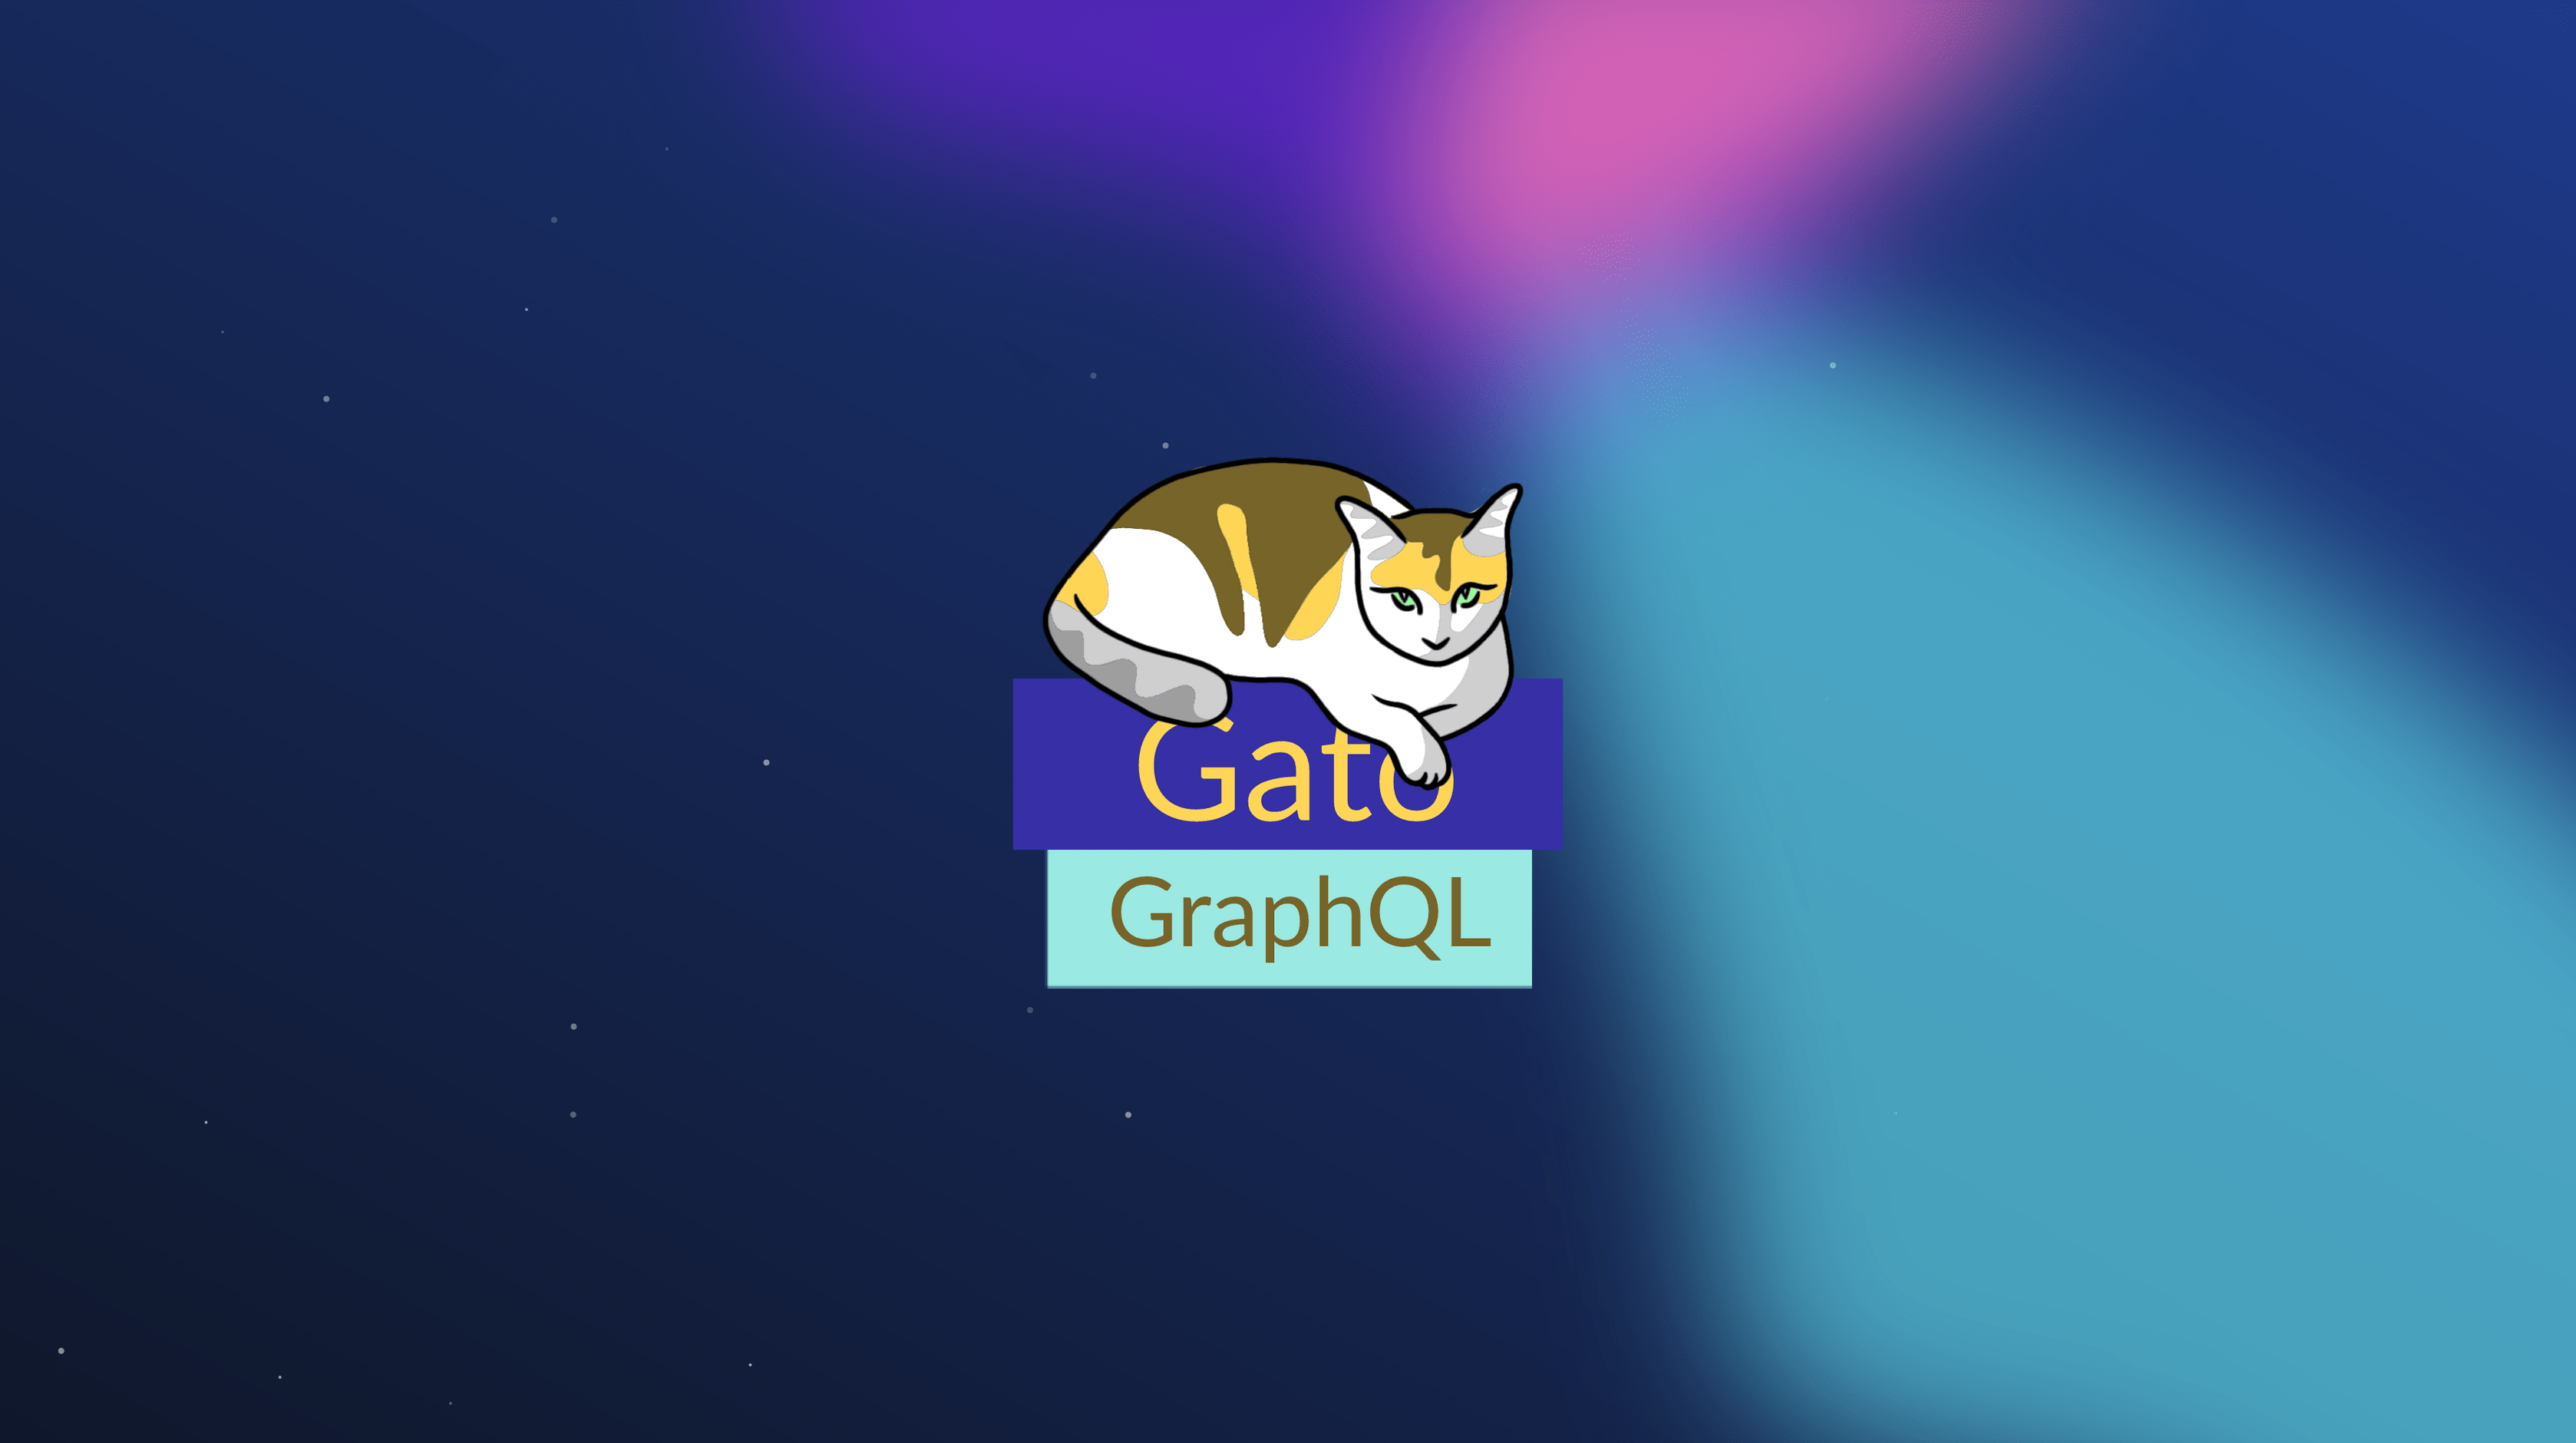 Gato GraphQL intro video